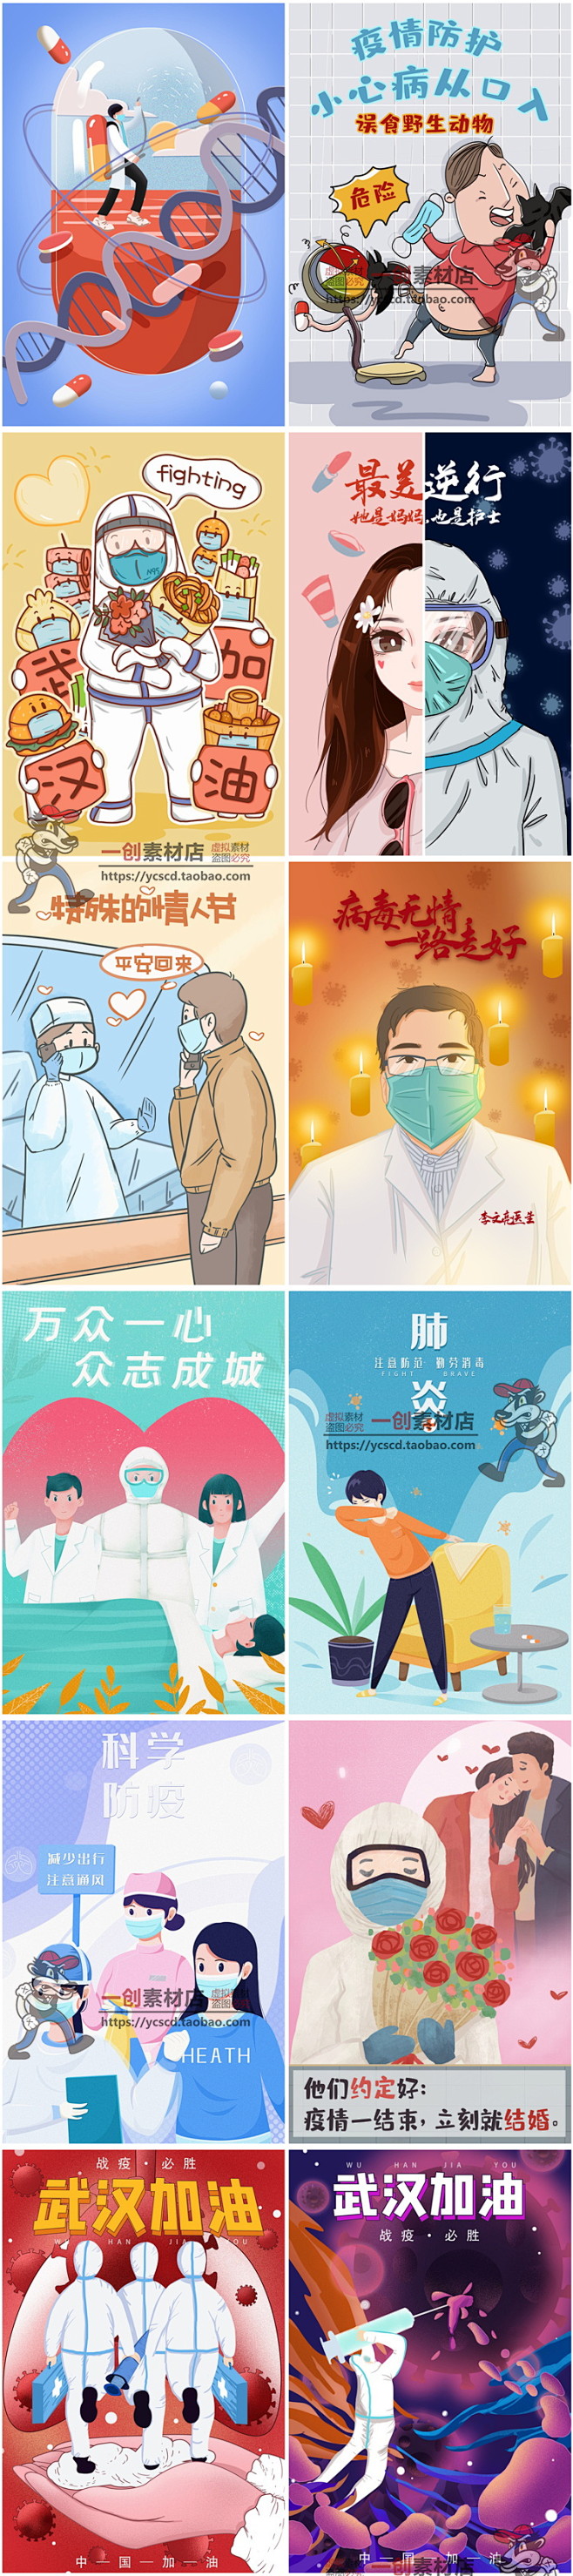 1980武汉新型冠状病毒肺炎抗击疫情防疫宣传插画海报模板psd素材淘宝